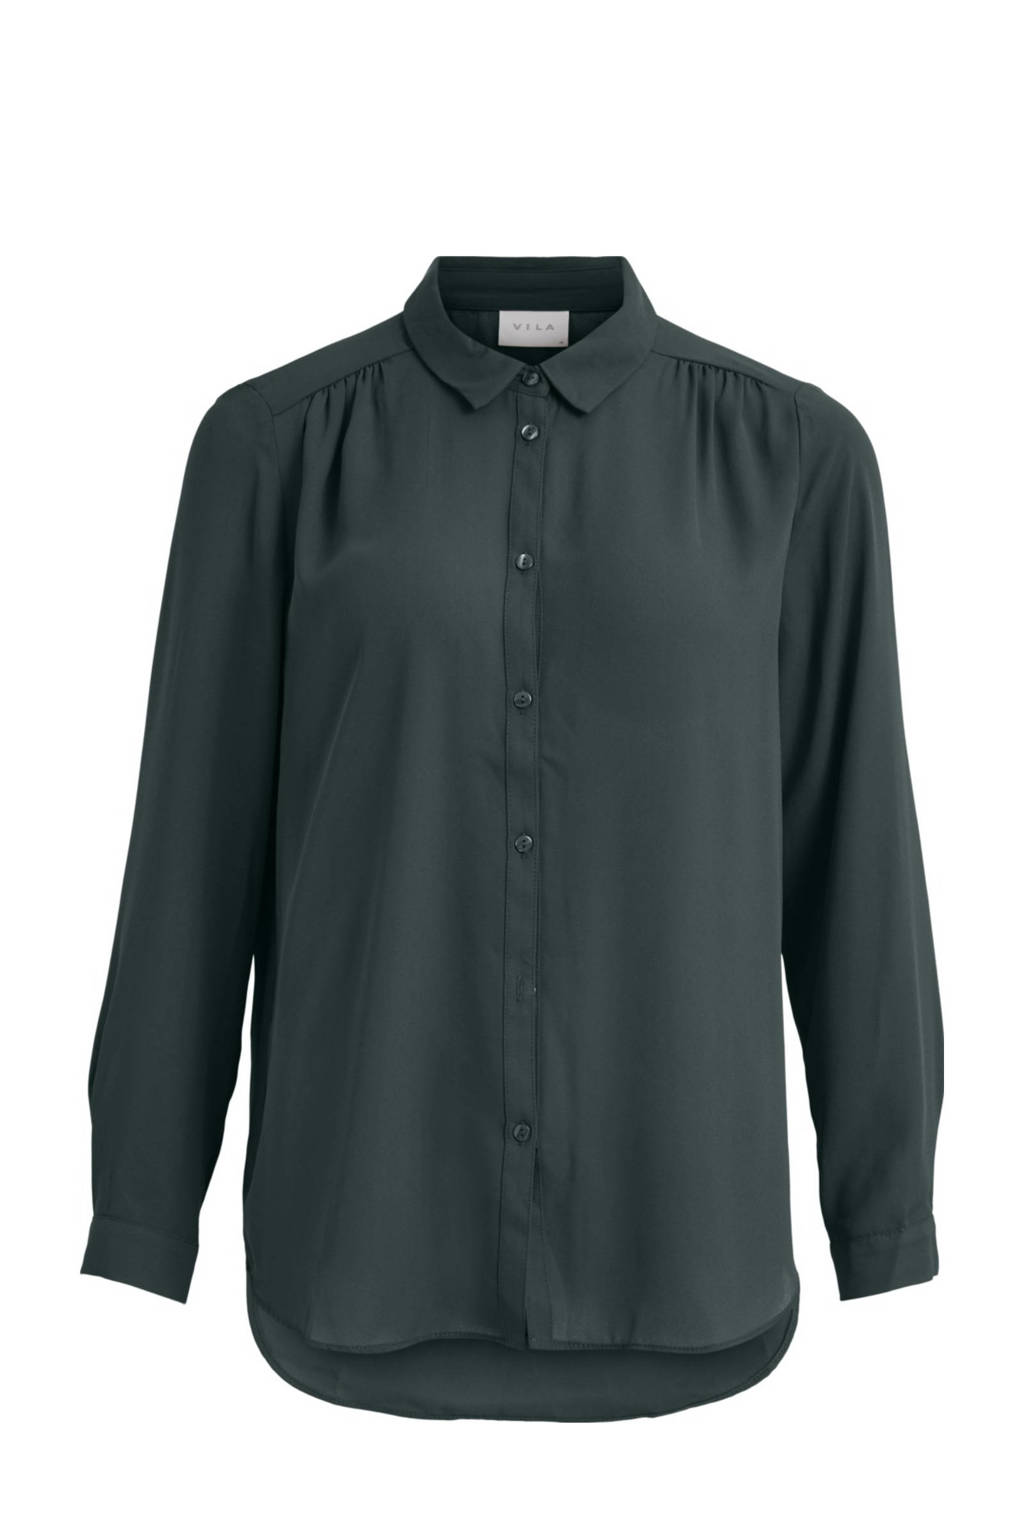 Grijsgroene dames VILA blouse van polyester met lange mouwen, klassieke kraag en knoopsluiting